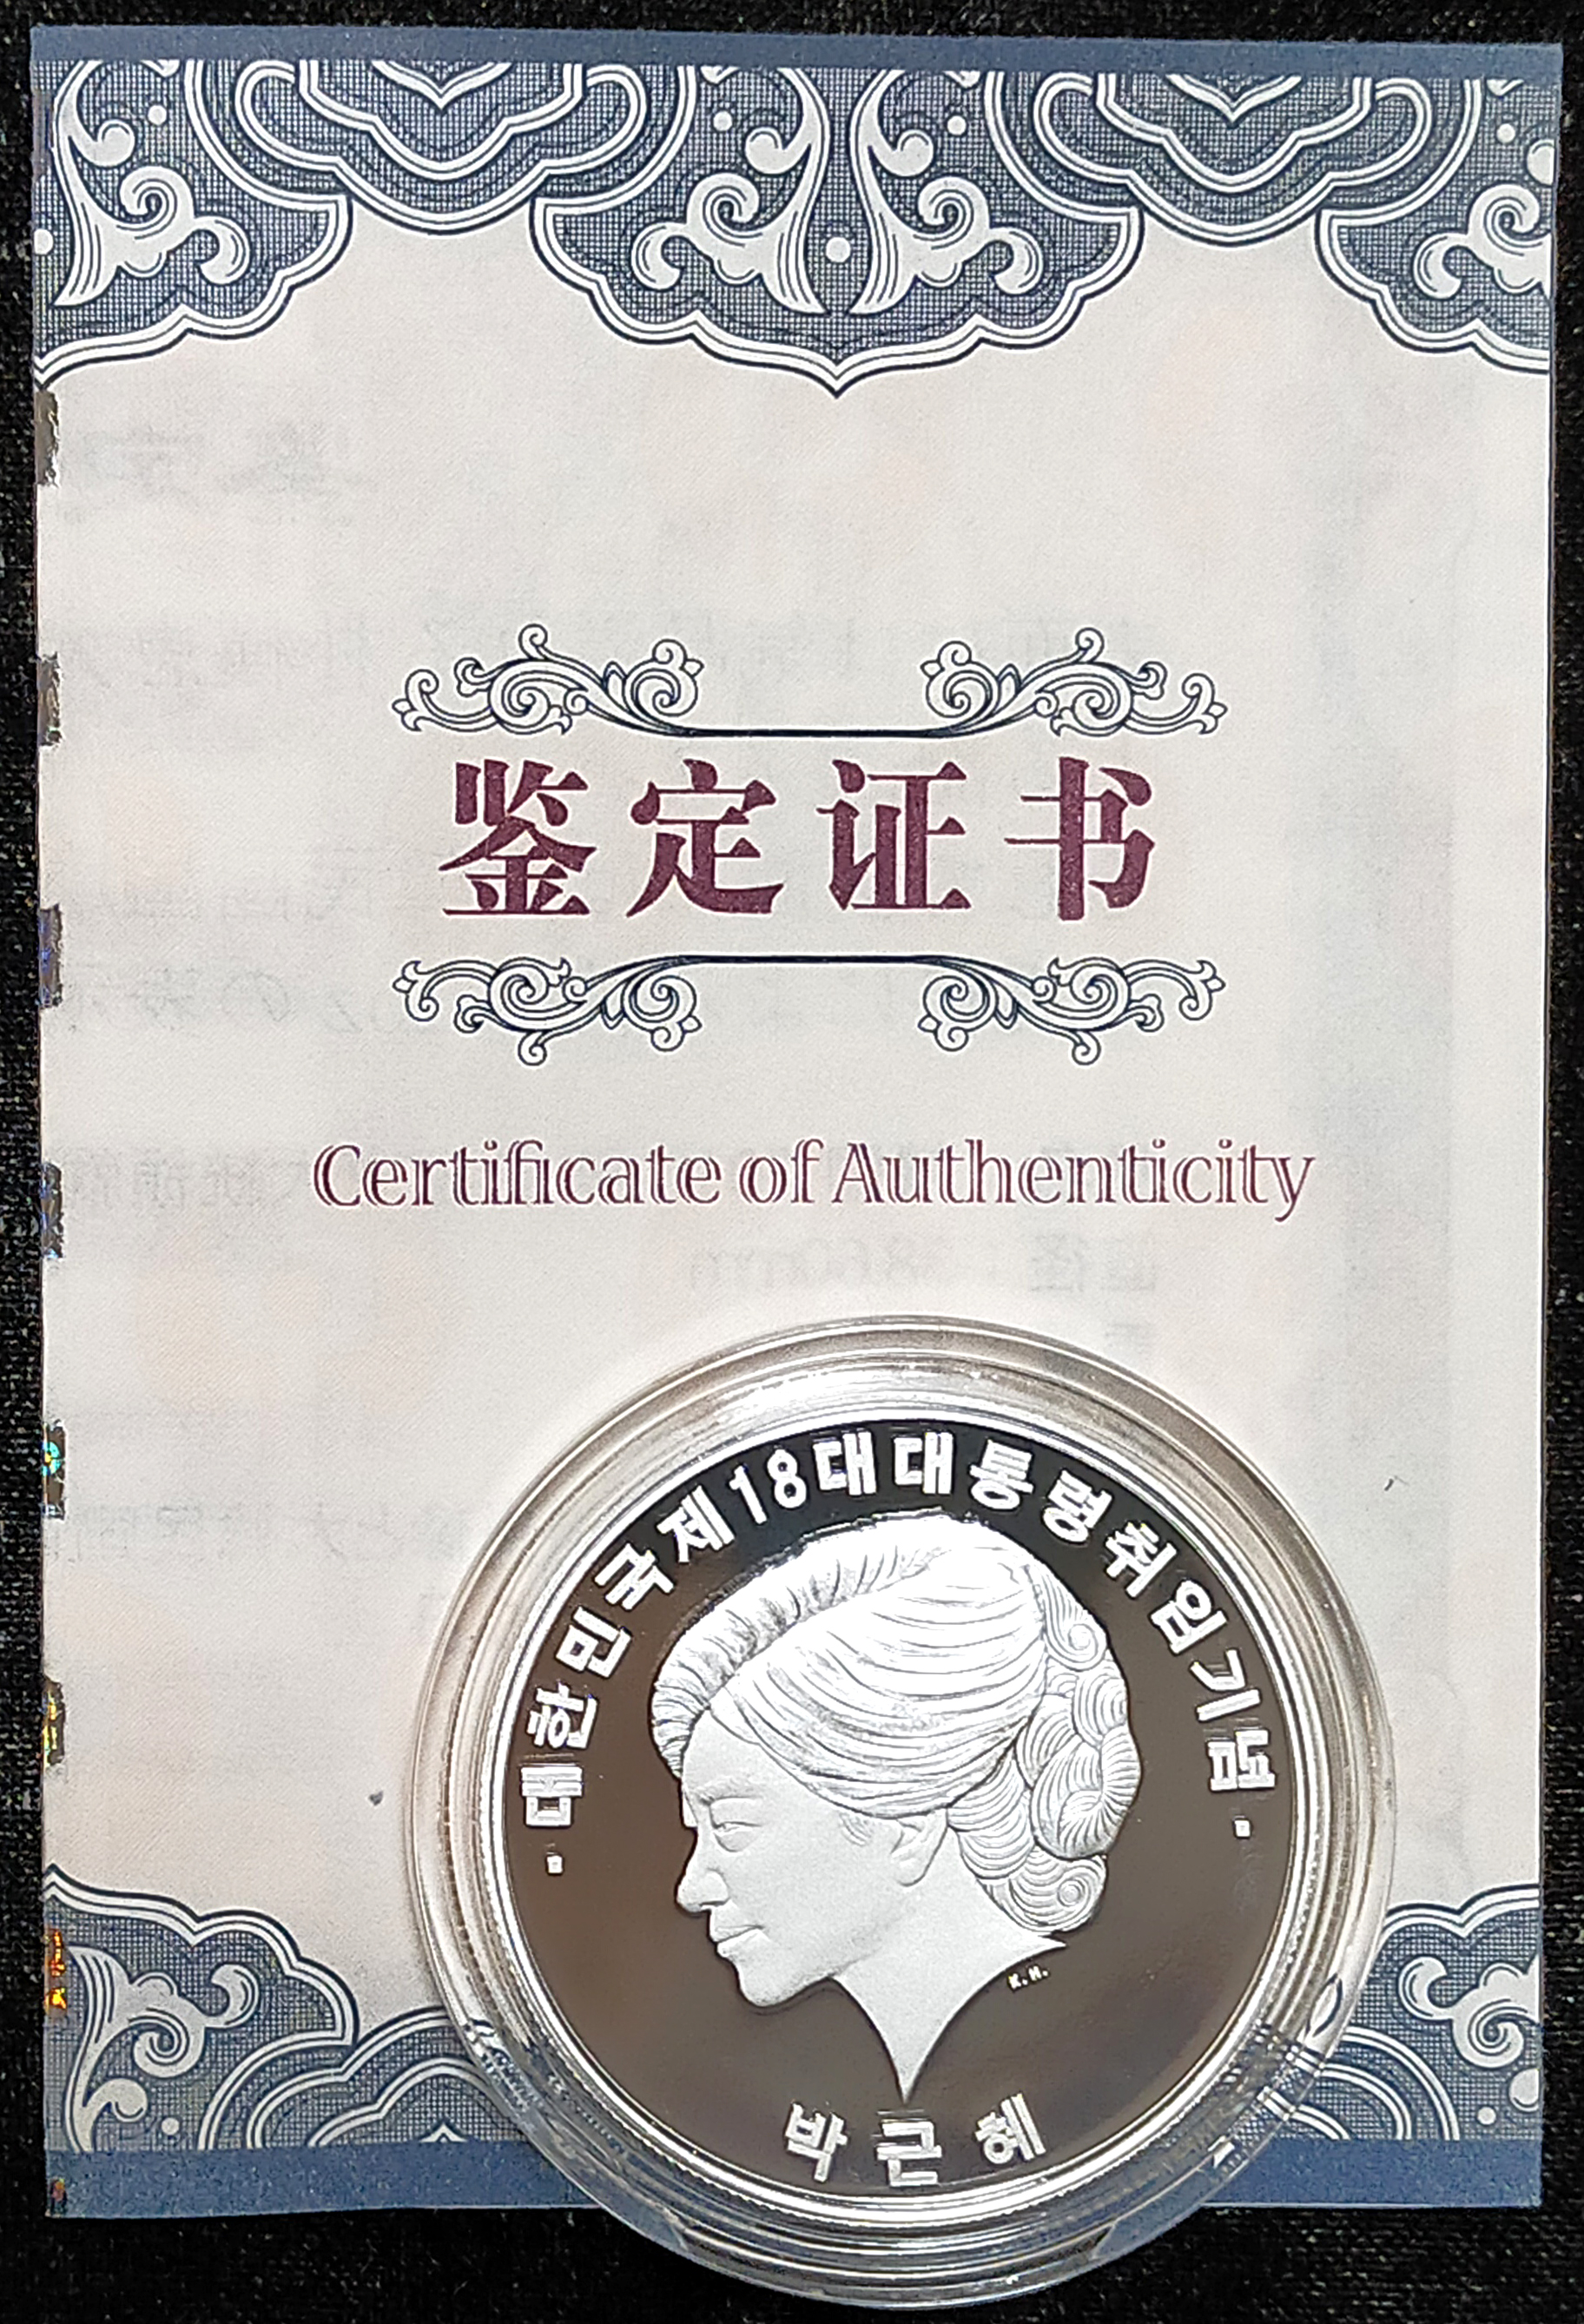 2013年 韓国第18代大統領就任記念純銀製徽章純銀 カプセル入造幣局発行 品位保証鑑定証付